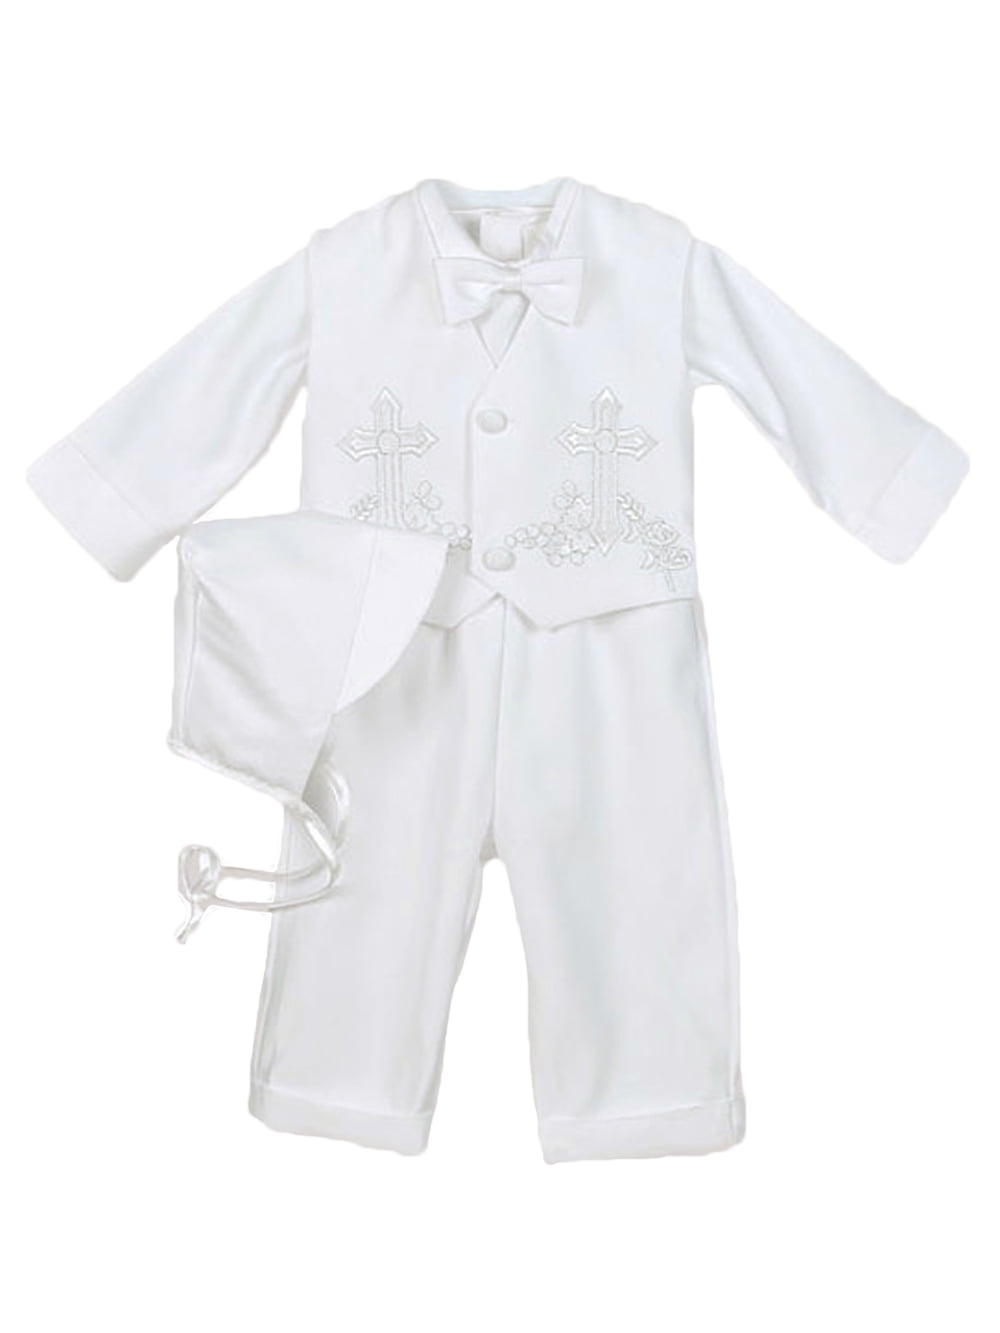 0-24M Baby Boy Communion Christening Baptism Outfit Suit set size XS S M L XL 